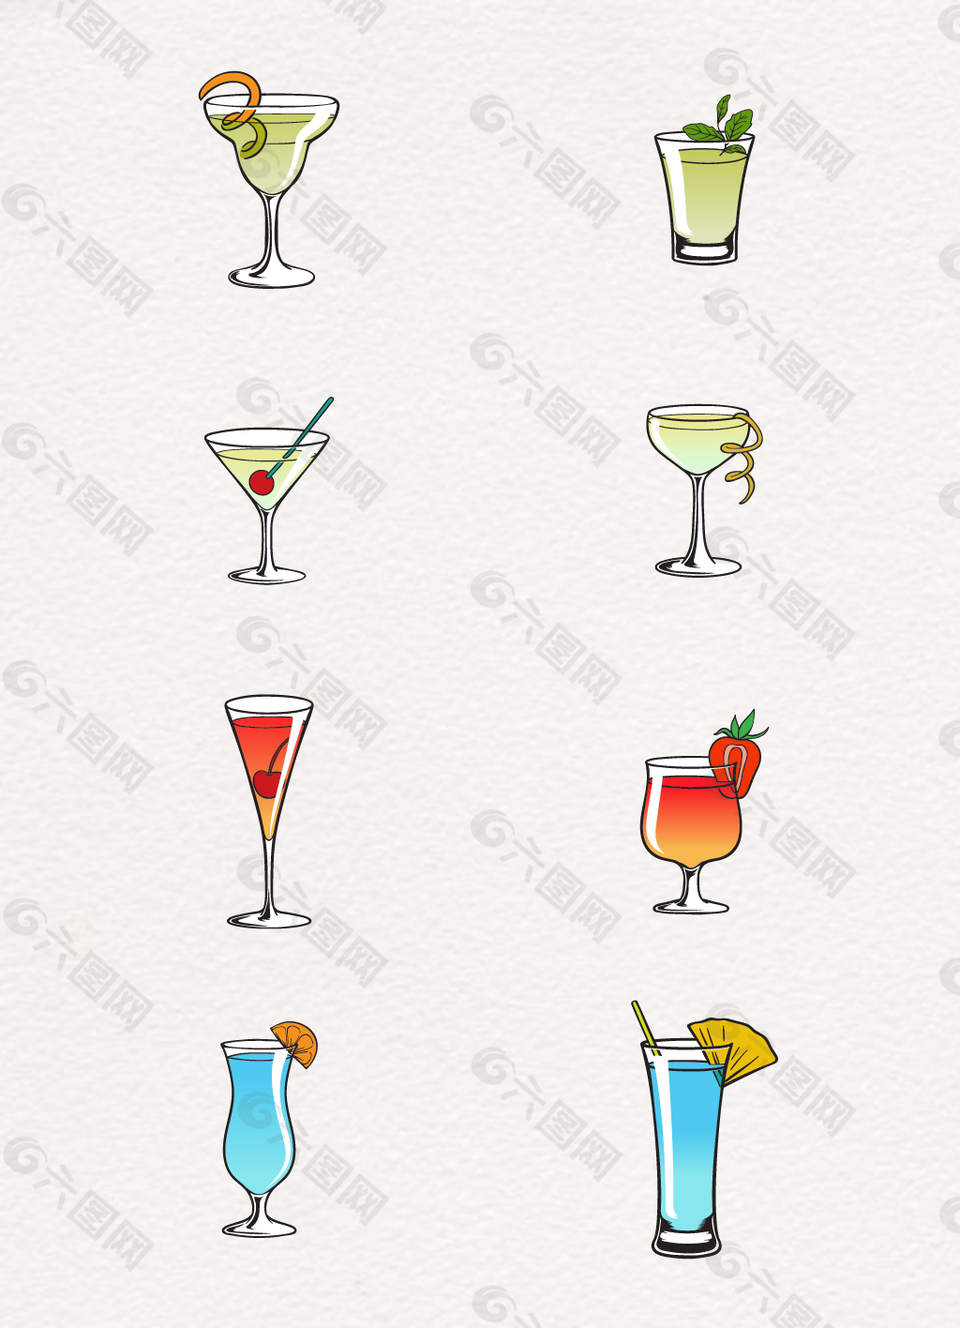 8款玻璃杯手绘饮料饮品设计素材